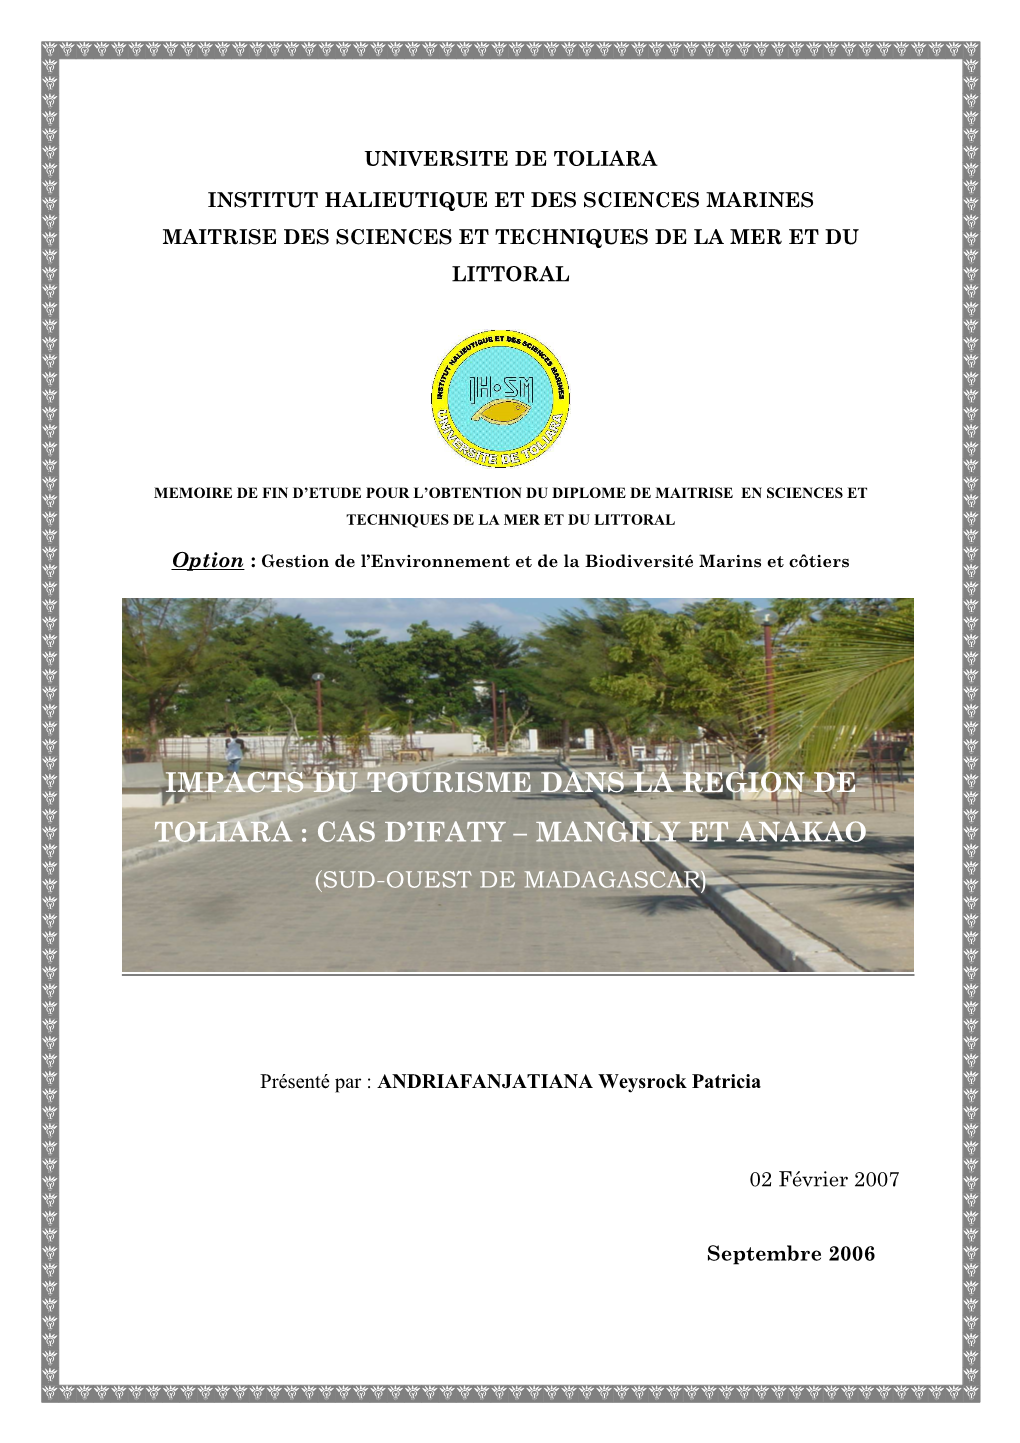 Impacts Du Tourisme Dans La Region De Toliara : Cas D'ifaty – Mangily Et Anakao